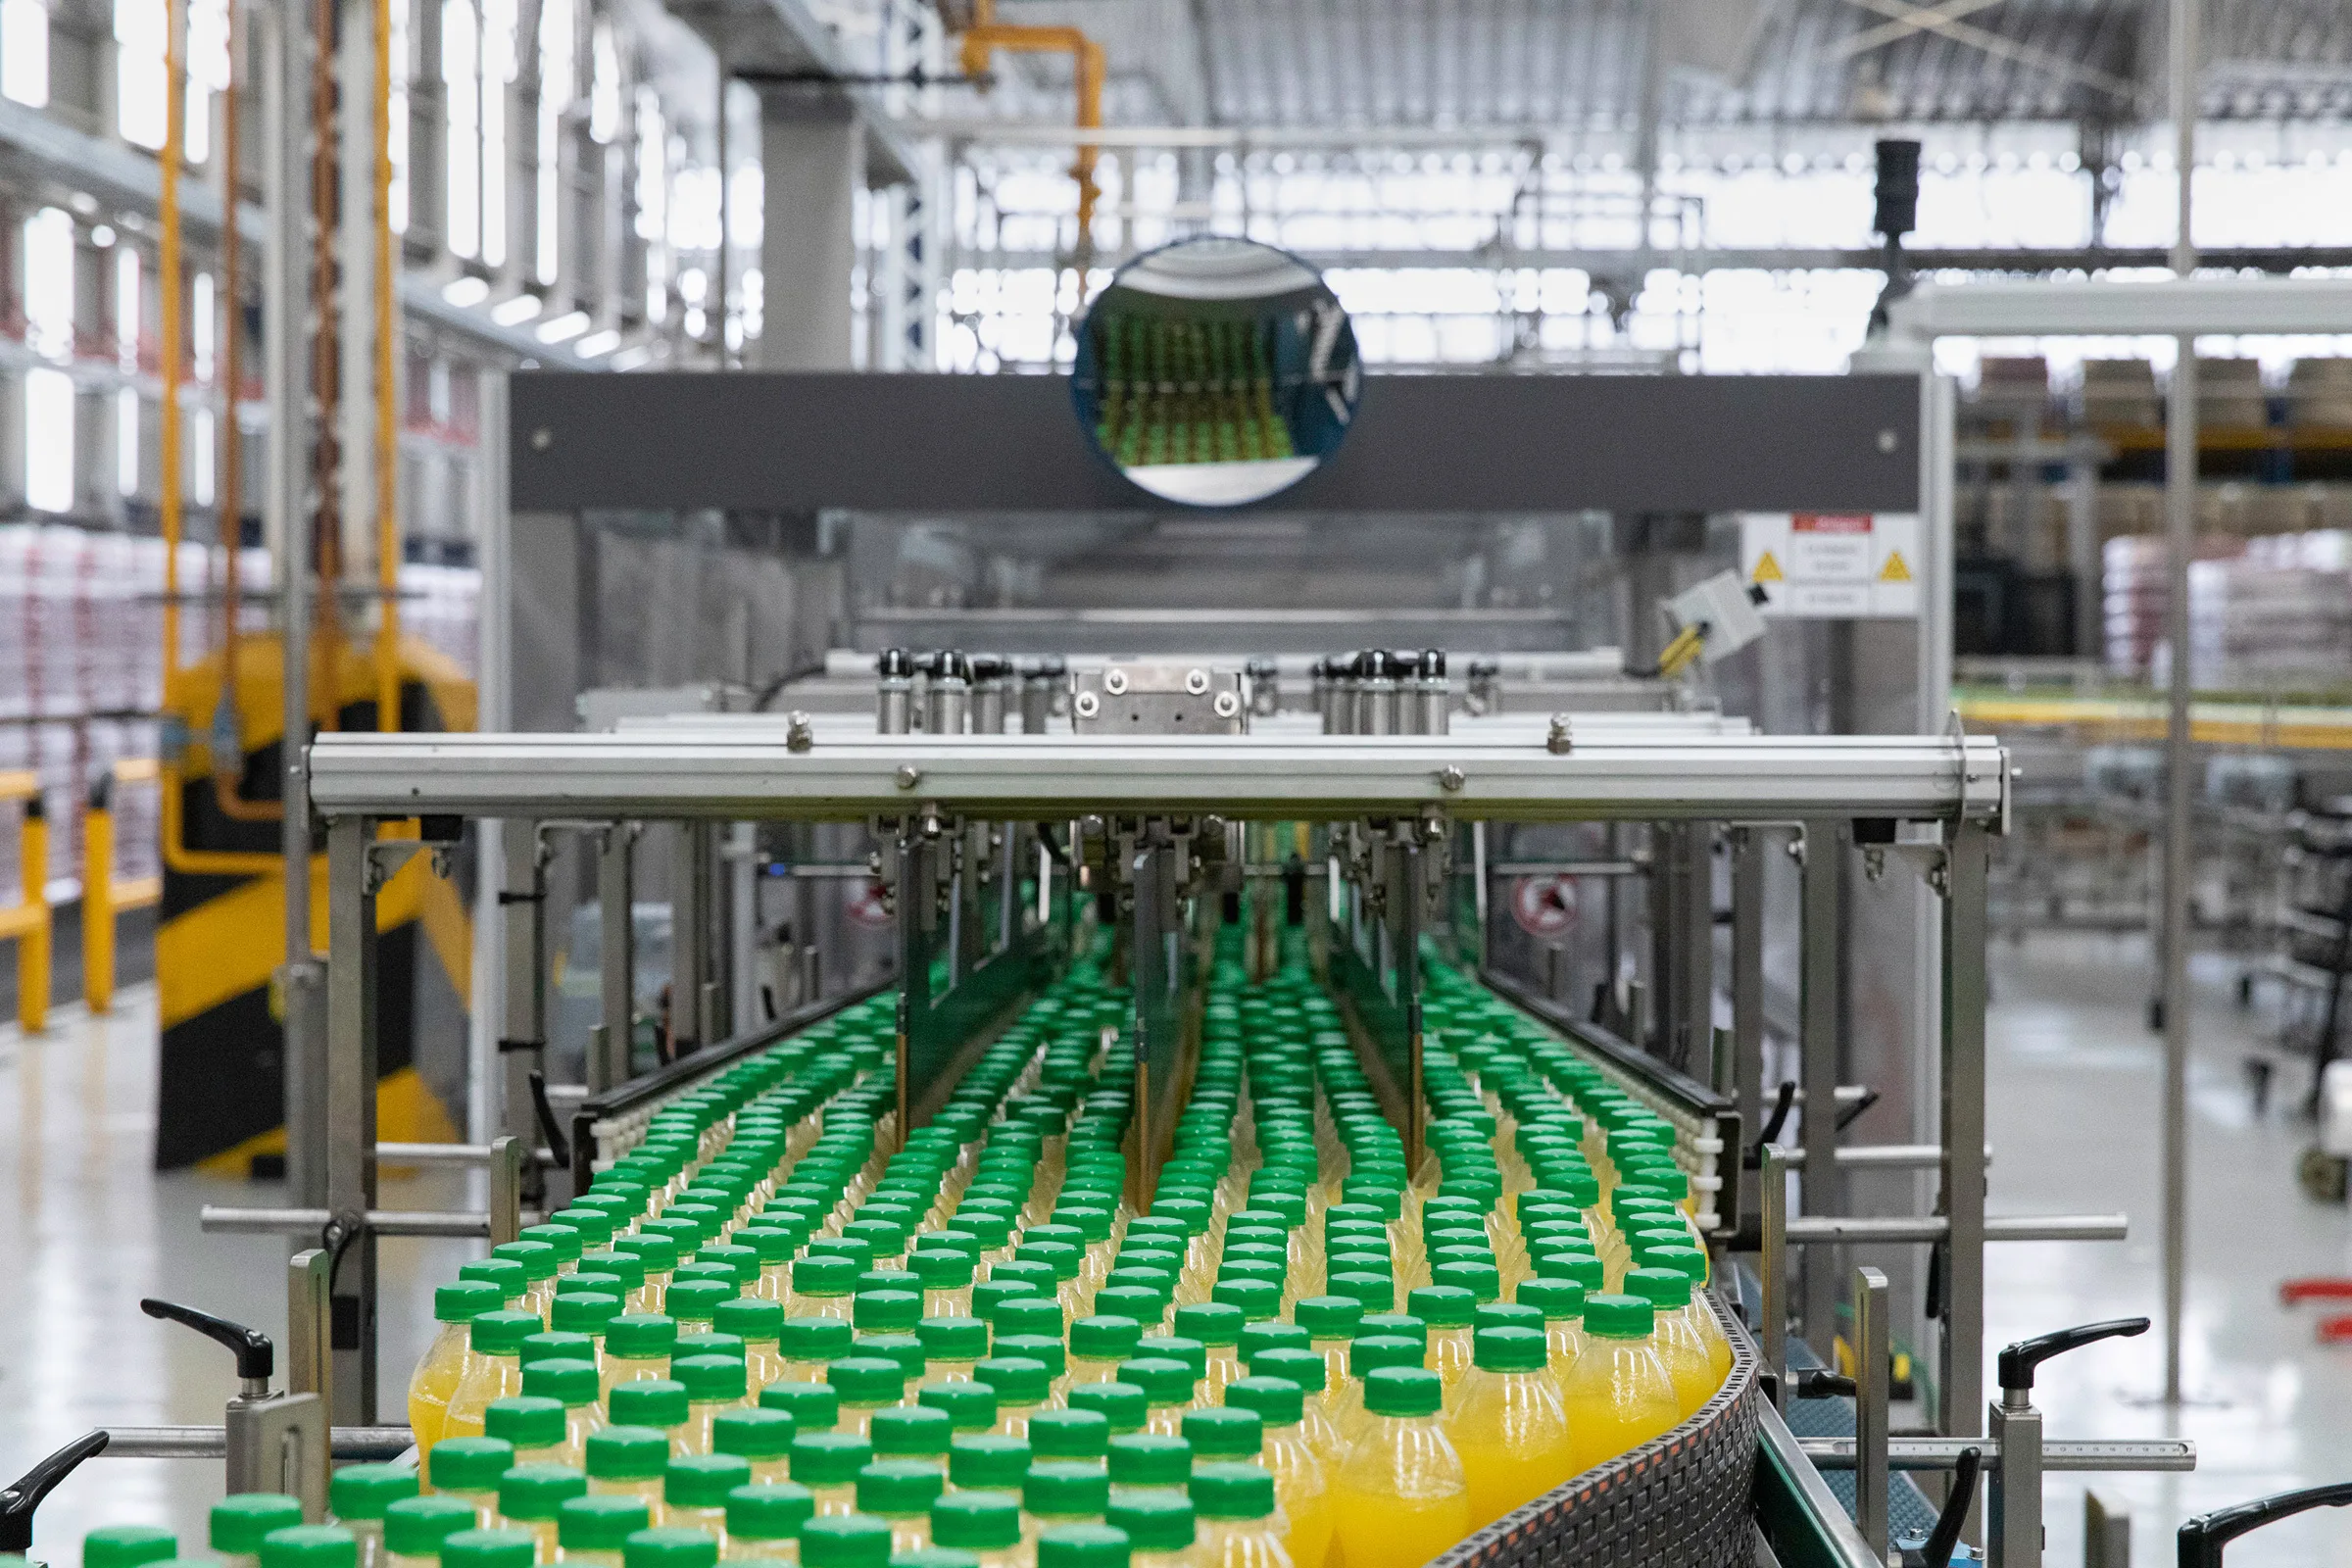 a conveyor belt with green bottles